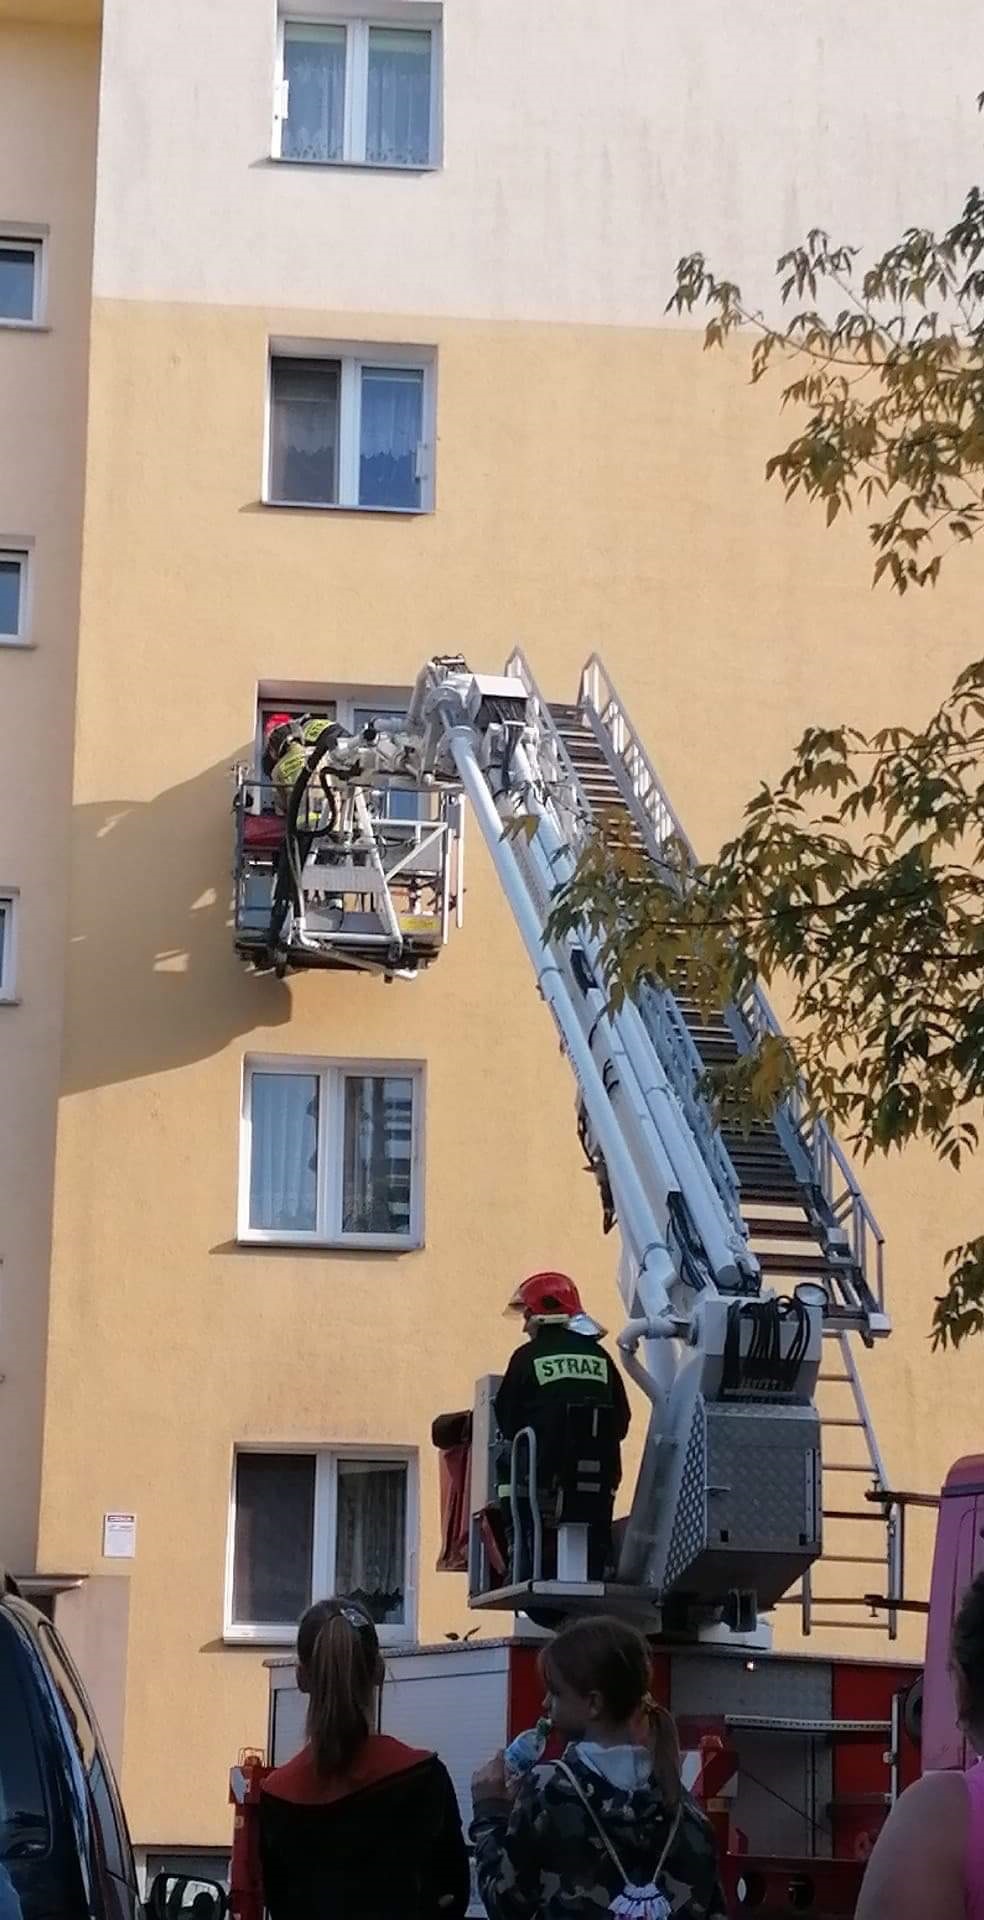 Strażacy bez porblemu dostali się do mieszkania na drugim piętrze/foto:Hanna Wojtaszek